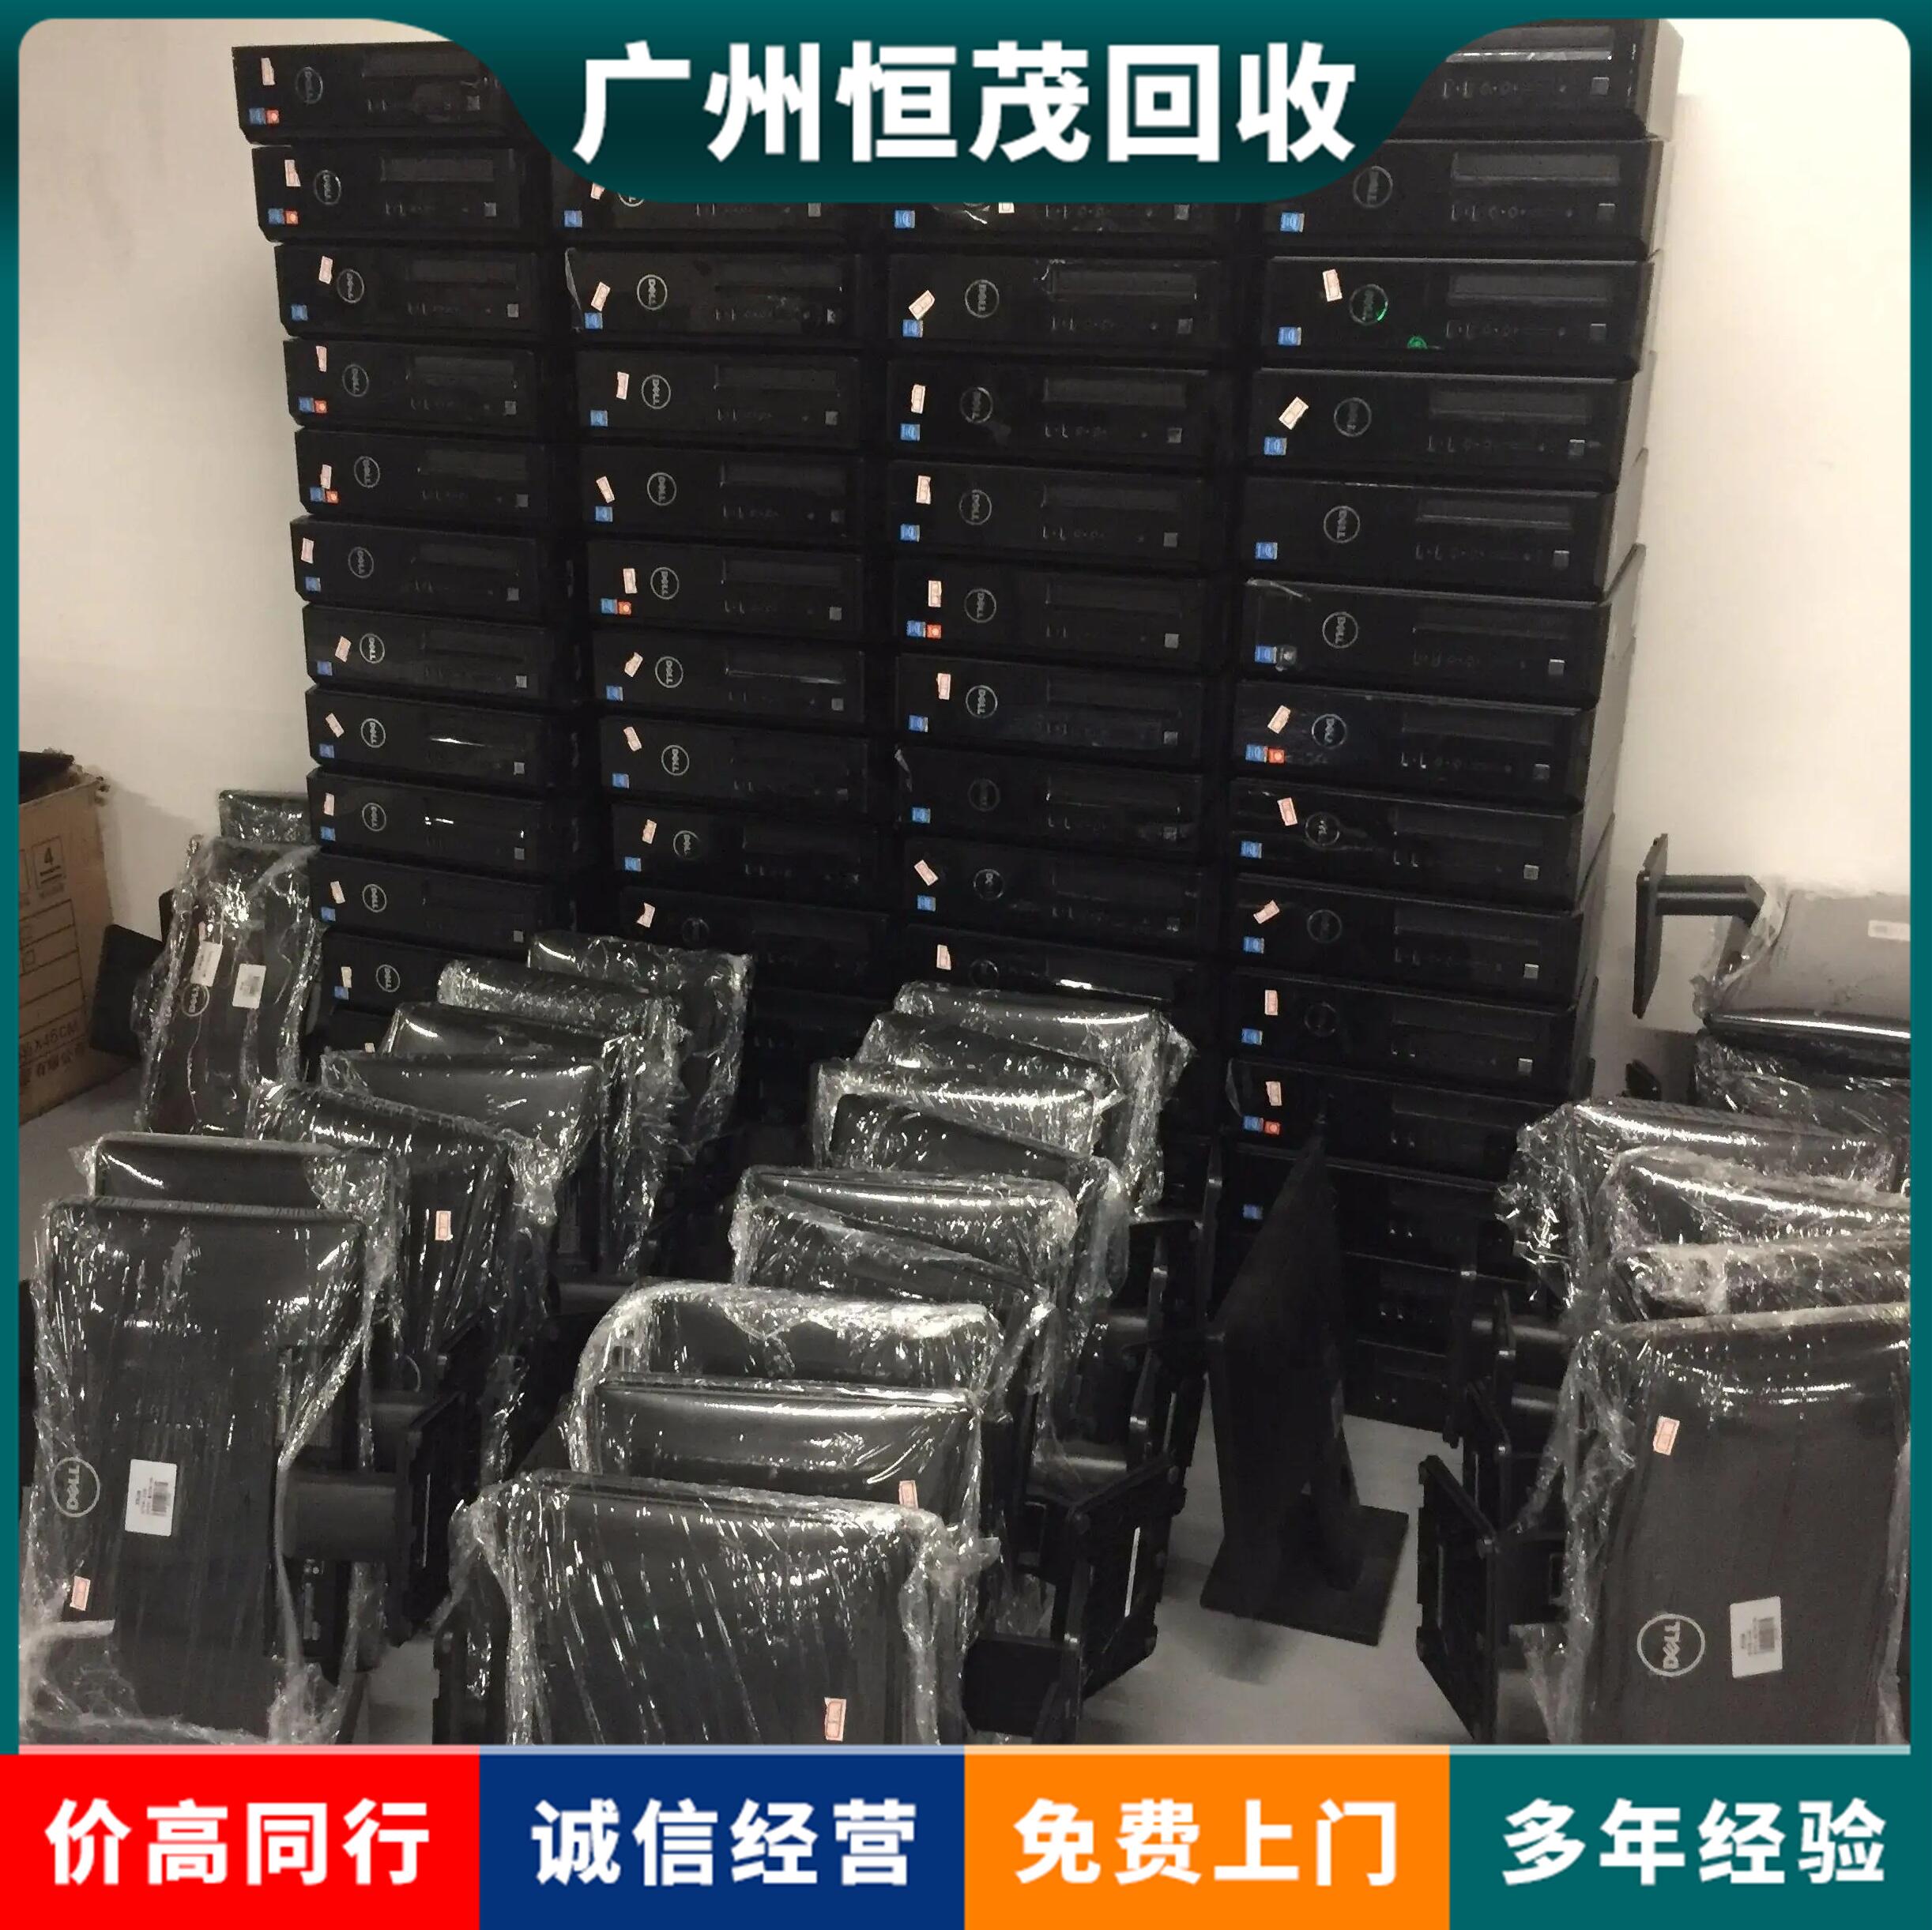 升级更换二手电脑回收,江门新会区电脑回收当场结算i5/i7cup